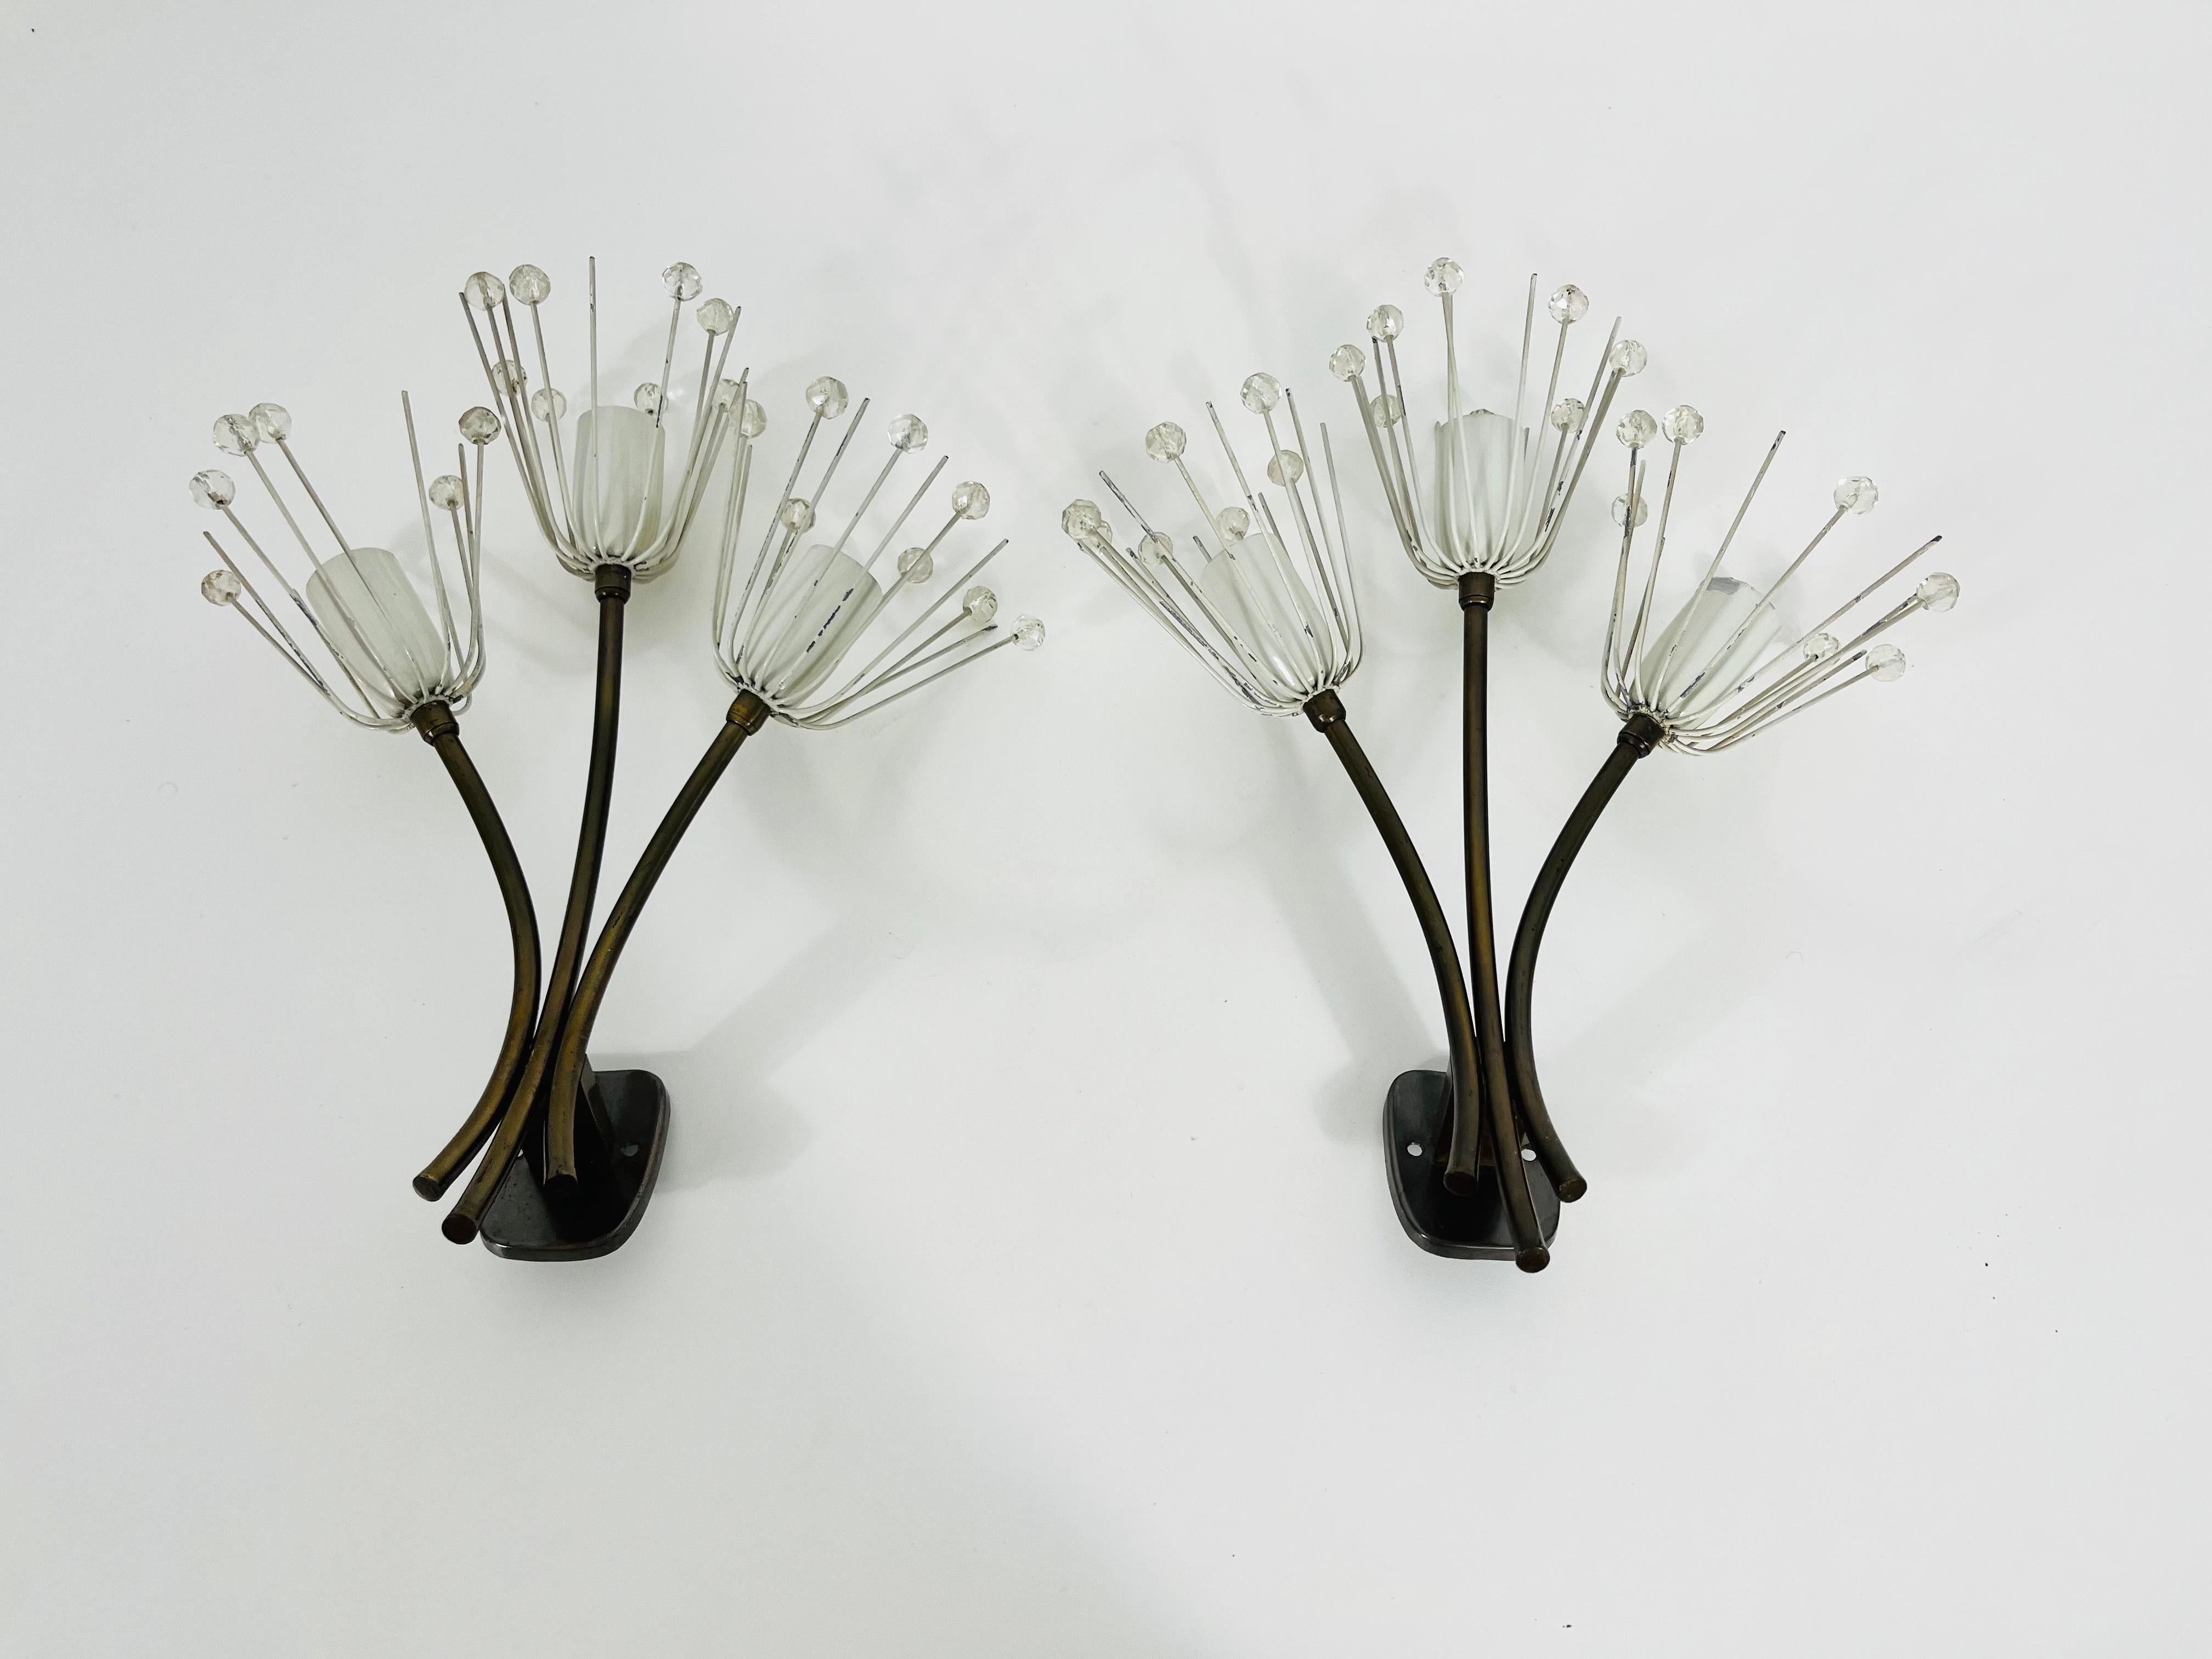 Ein schönes Paar Wandlampen aus Messing, hergestellt von Emil Stejnar für Rupert Nikoll, Österreich in den 1960er Jahren. Das Paar hat ein erstaunliches Midcentury-Design. Er ist aus Messing und kleinen Gläsern gefertigt und passt perfekt in ein